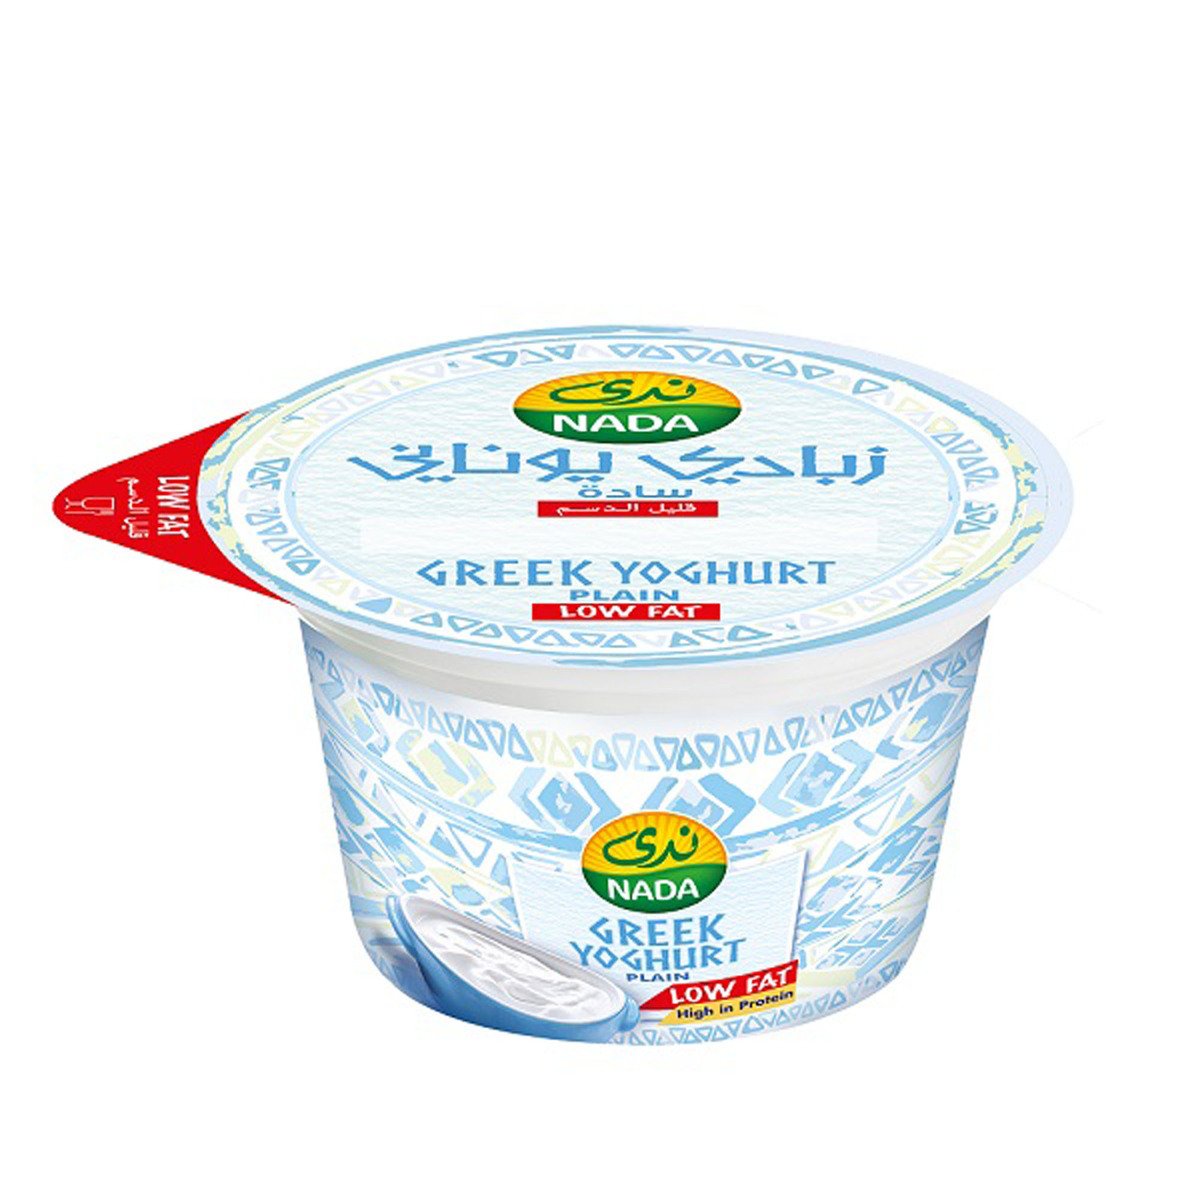 اشتري قم بشراء ندى زبادي يوناني سادة قليل الدسم 160 جم Online at Best Price من الموقع - من لولو هايبر ماركت Plain Yoghurt في السعودية